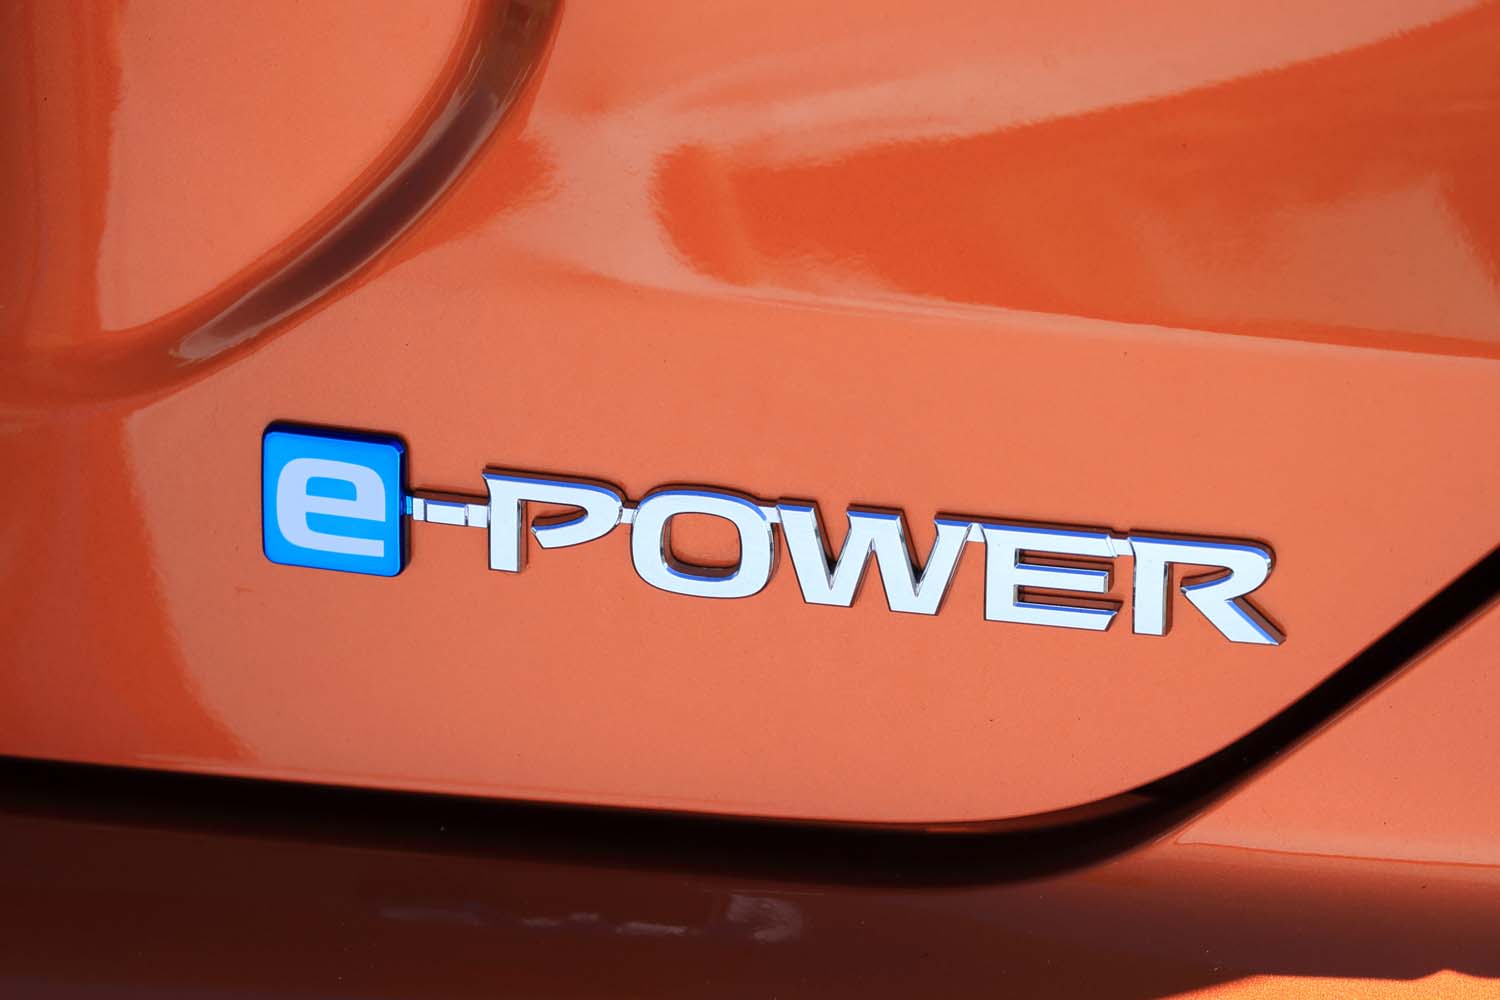 e-POWERは既存のものに比べ低速域におけるエンジンの作動頻度を下げ、モーターのみでの走行領域を拡大することで、より静粛・快適なドライブを可能にした。